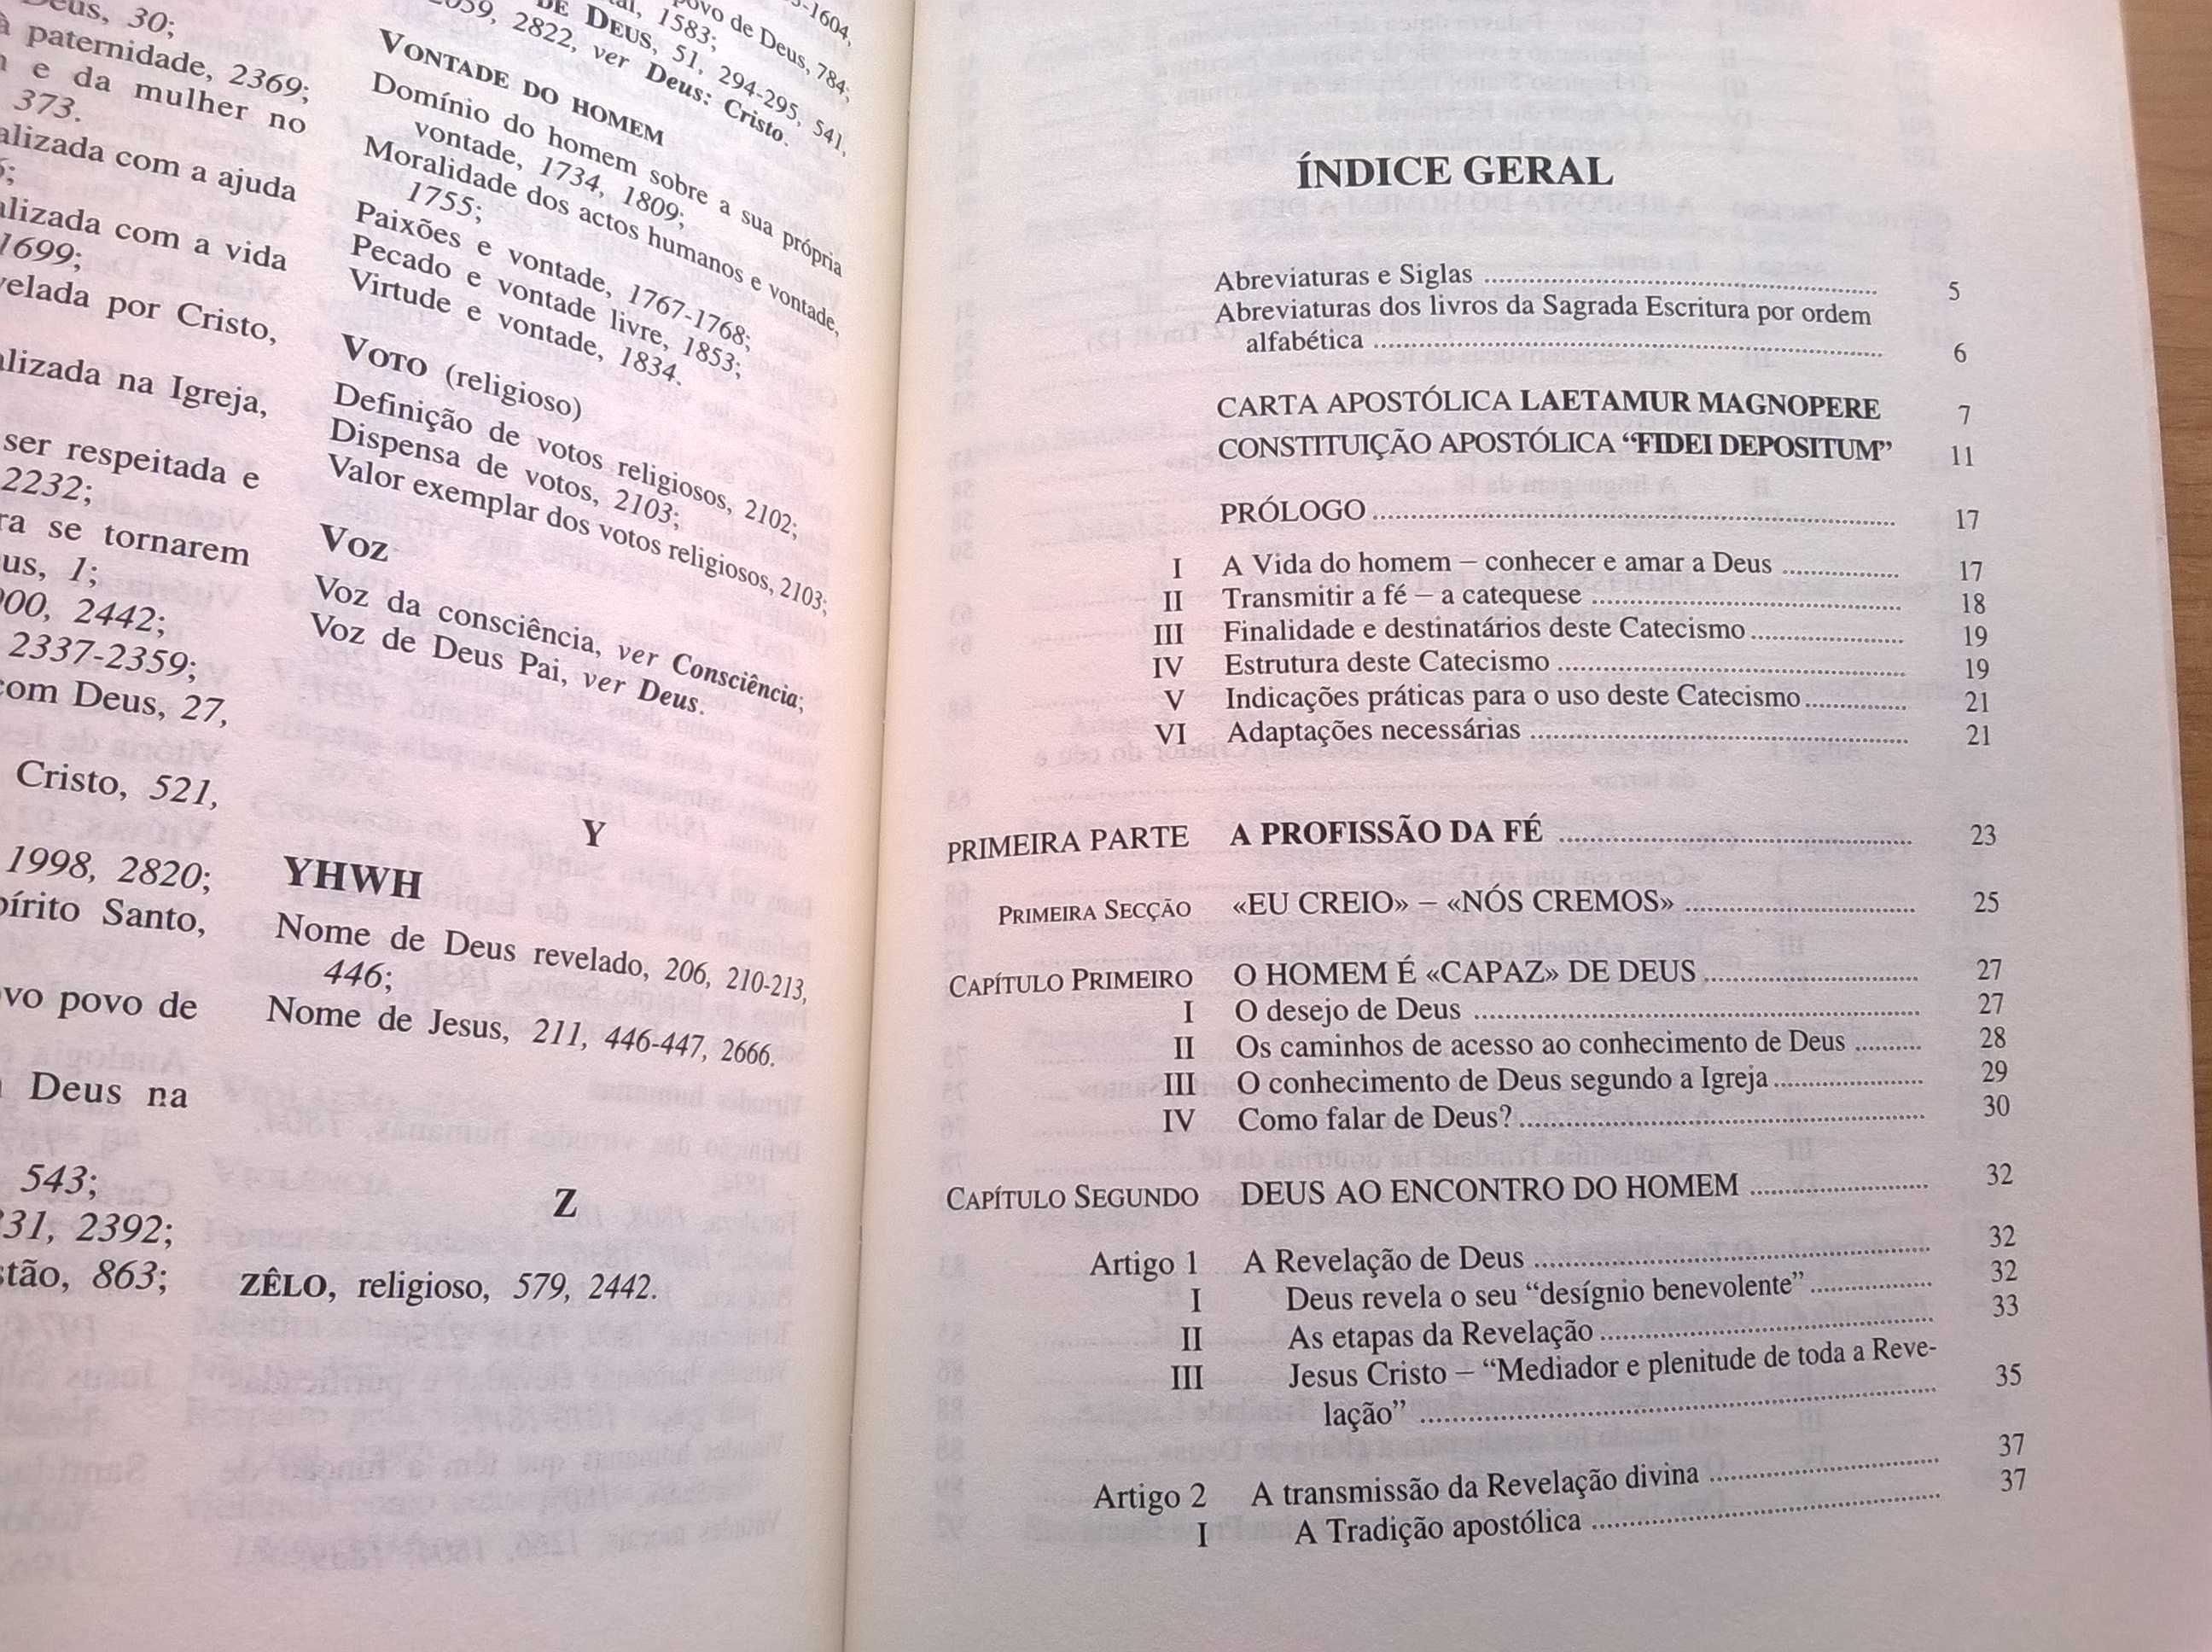 Catecismo da Igreja Católica (2.ª edição) - Gráfica de Coimbra